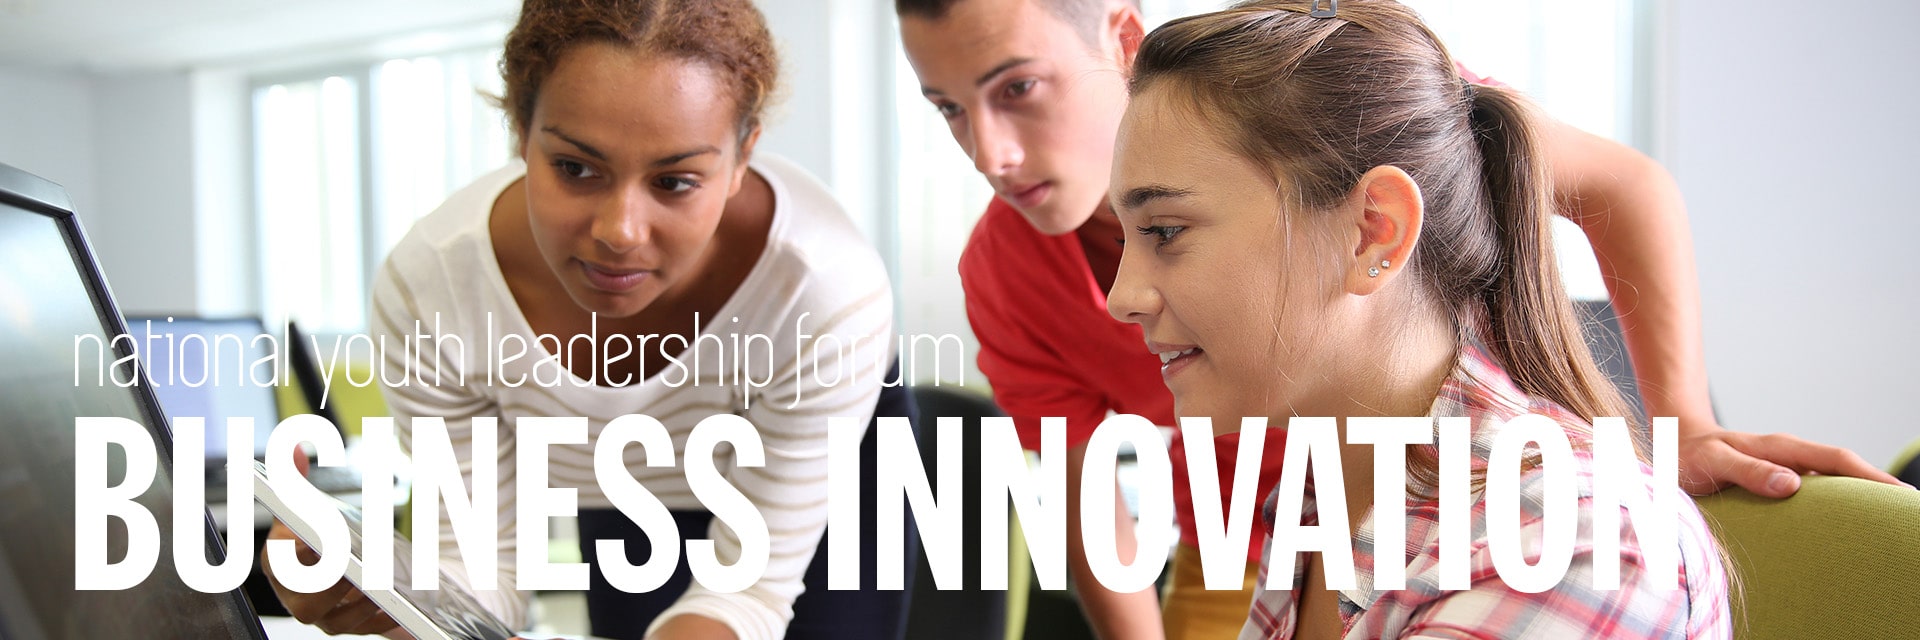 NYLF Business Innovation High School Summer Program Hightlights